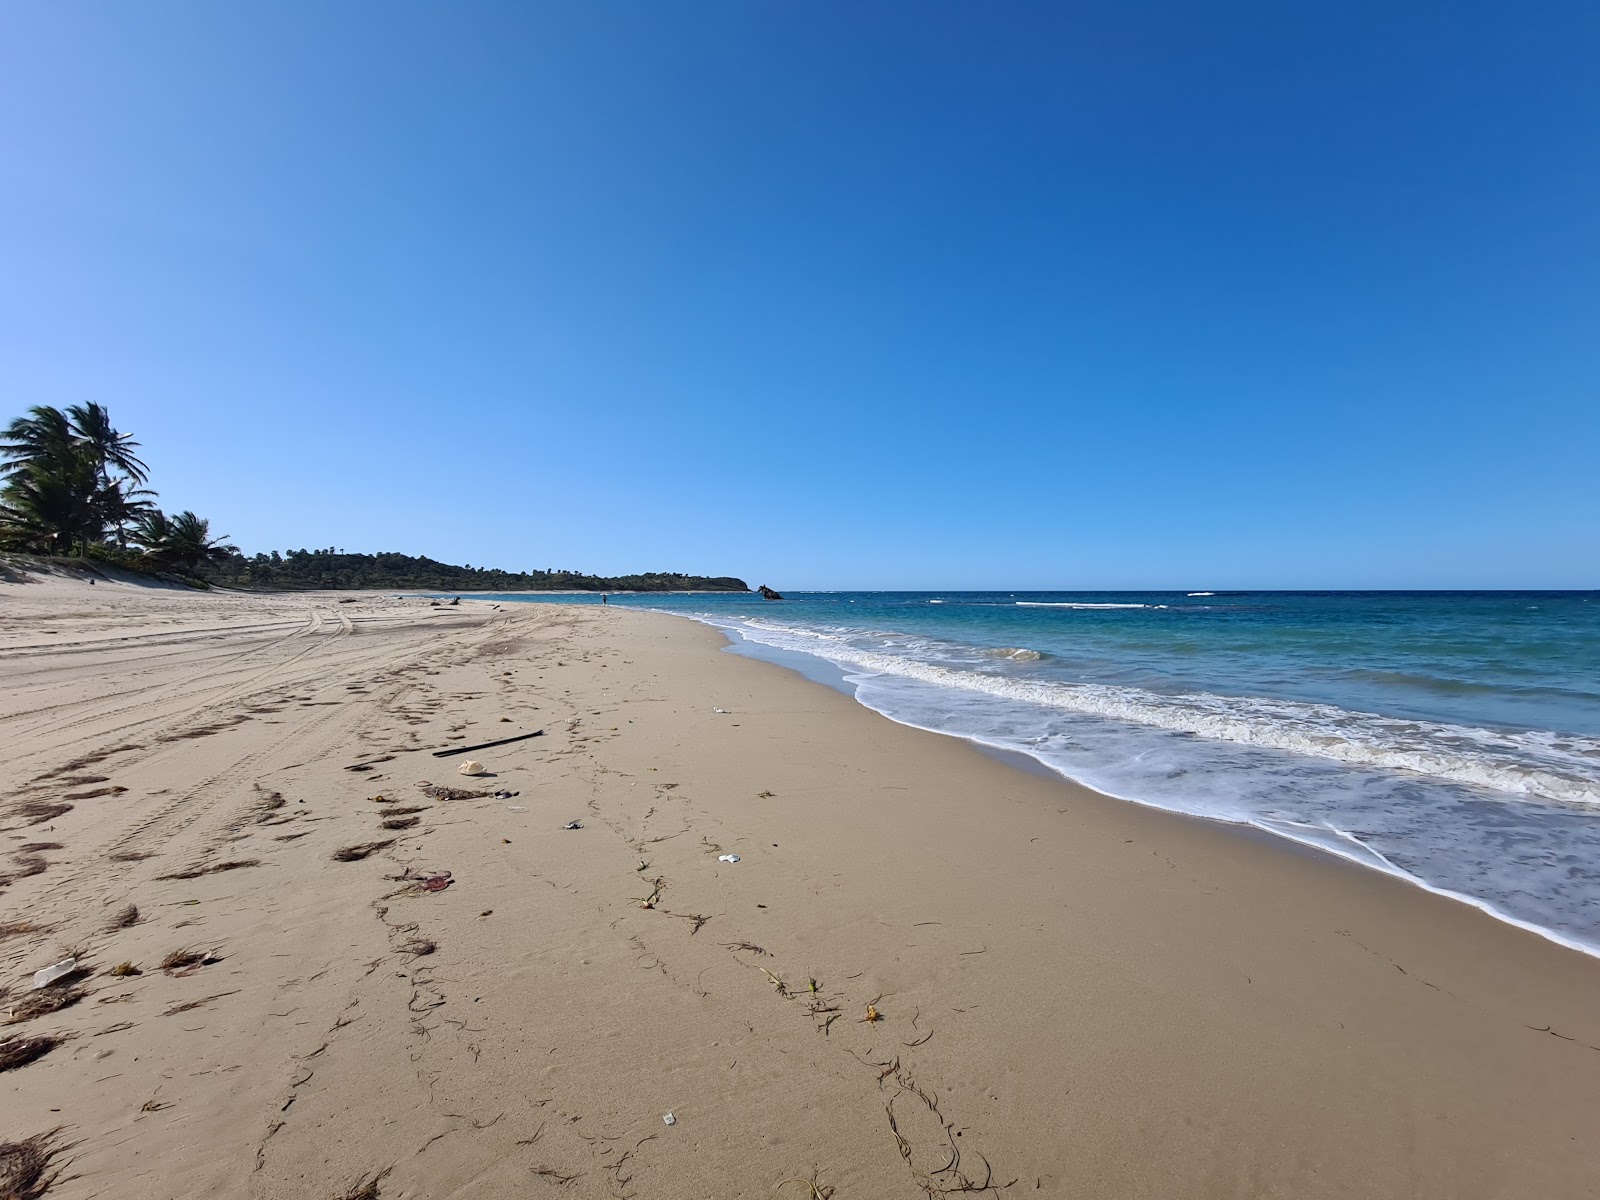 Playa Las Ojaldras'in fotoğrafı parlak kum yüzey ile